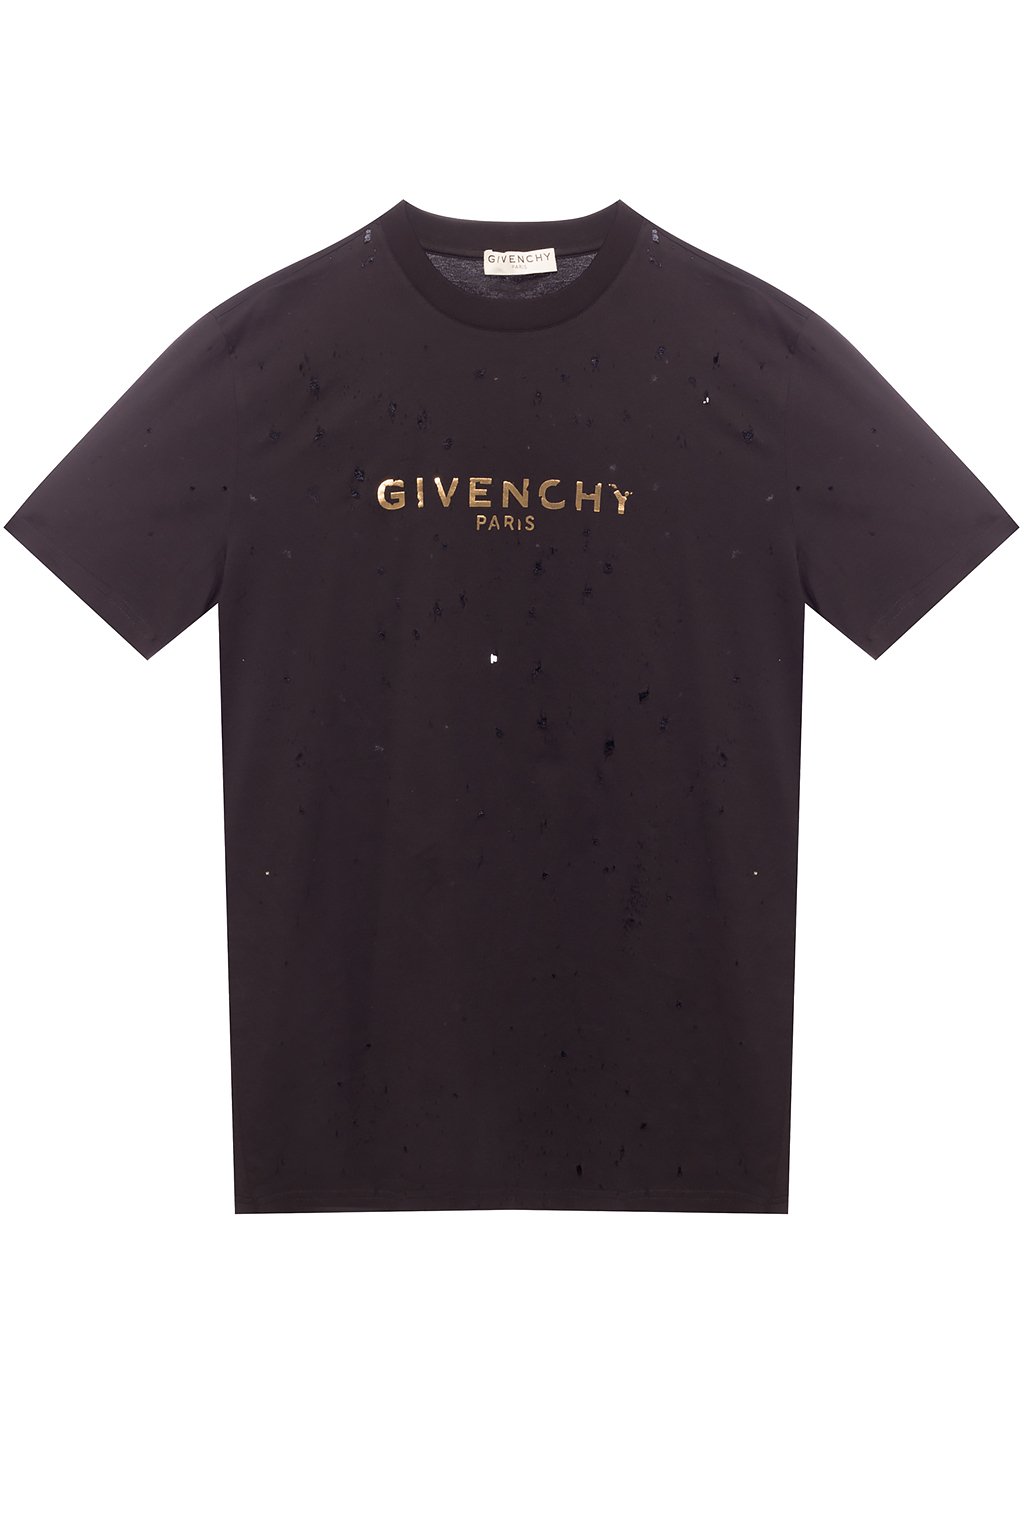 givenchy tee shirts